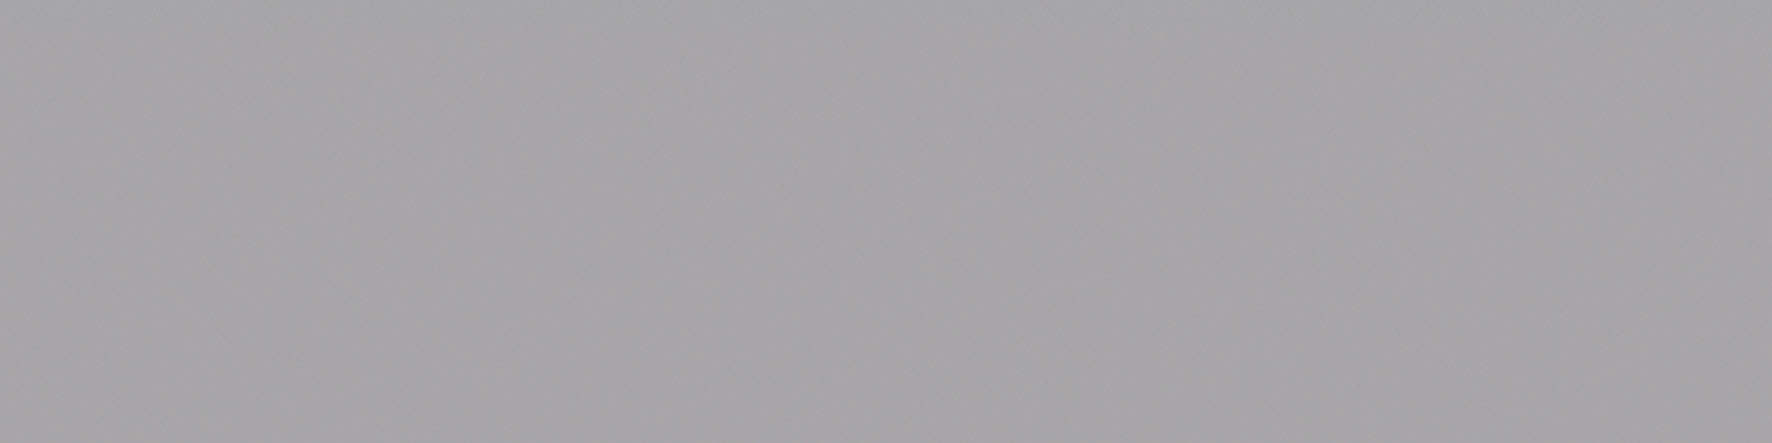 Catalea Gres Salmi Metrofliese Grau matt 7,5x30 cm  